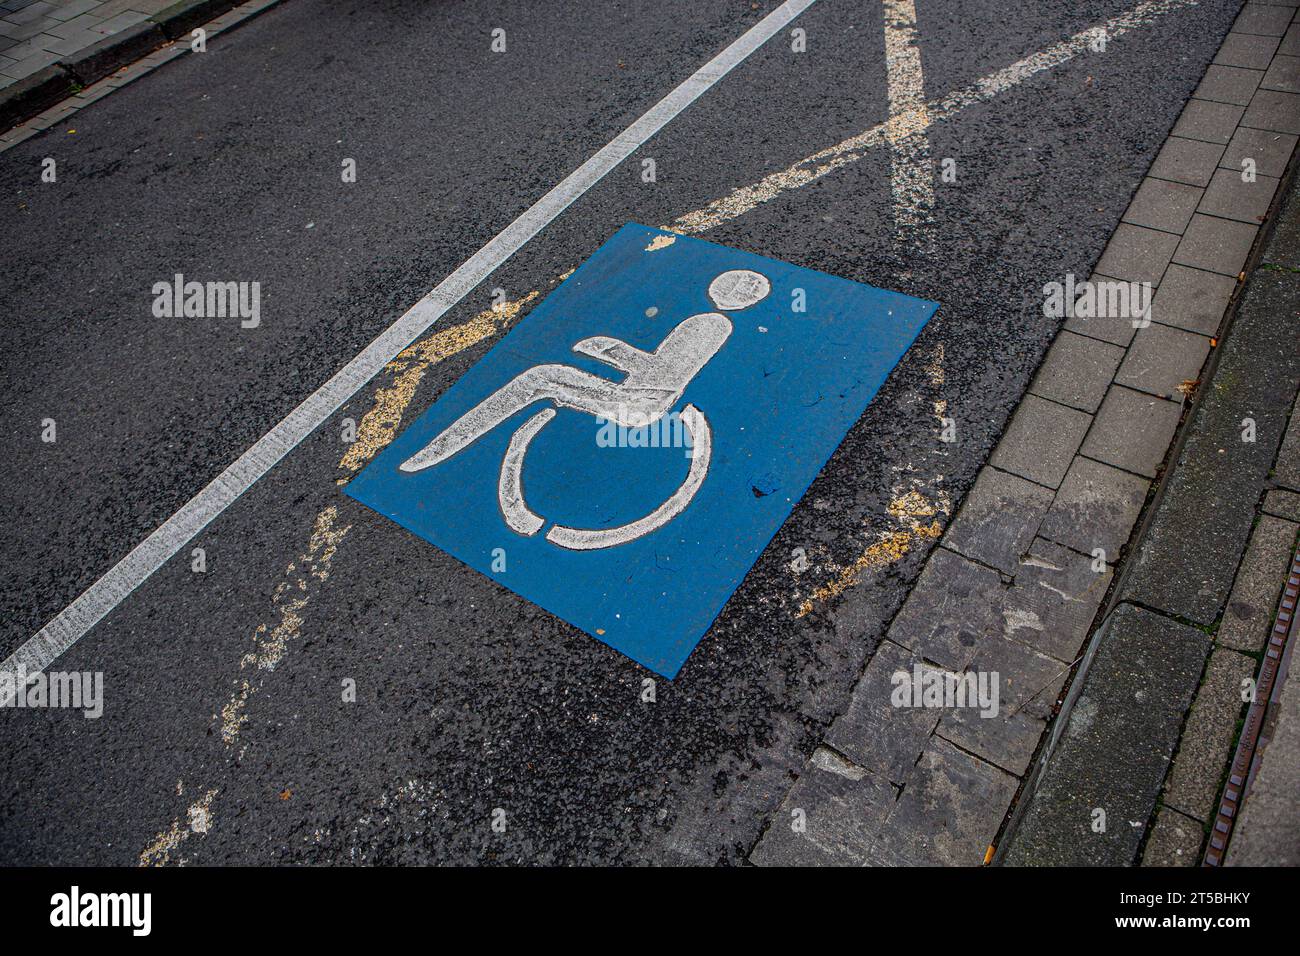 Behindertenpatkplatz auf einer Straße Aachen *** Disabled parking space on a street in Aachen Stock Photo